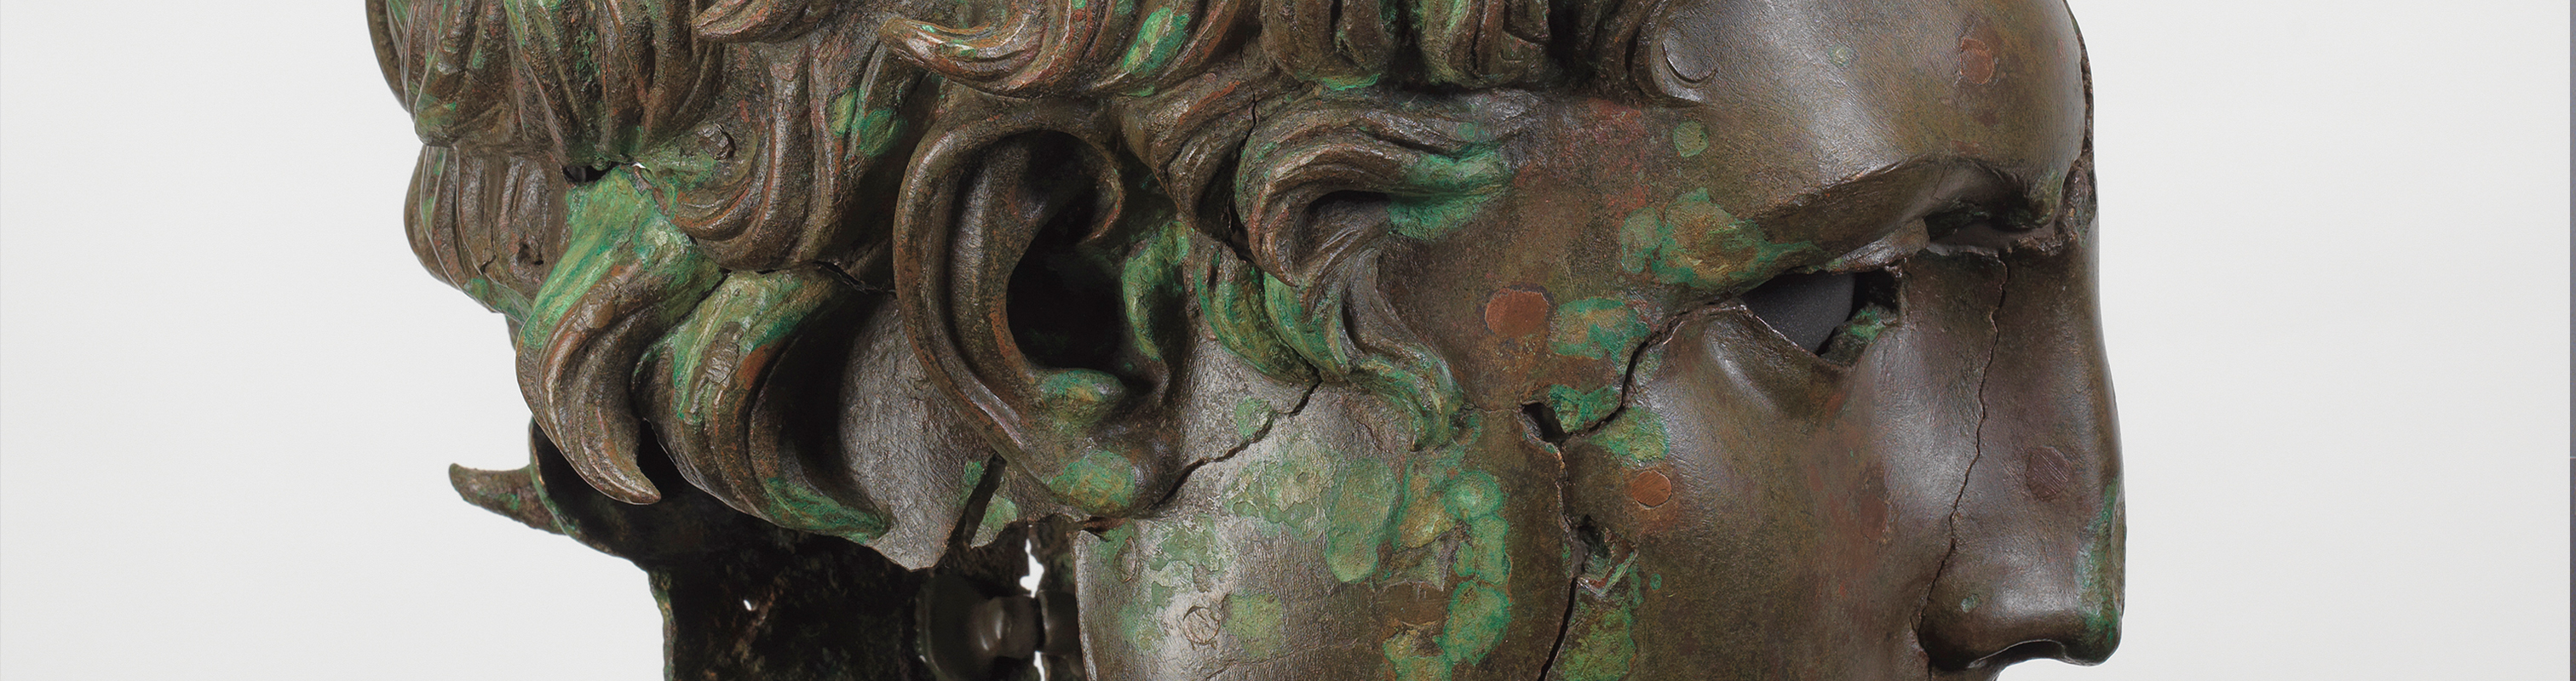 Un bronce monumental helenístico recuperado